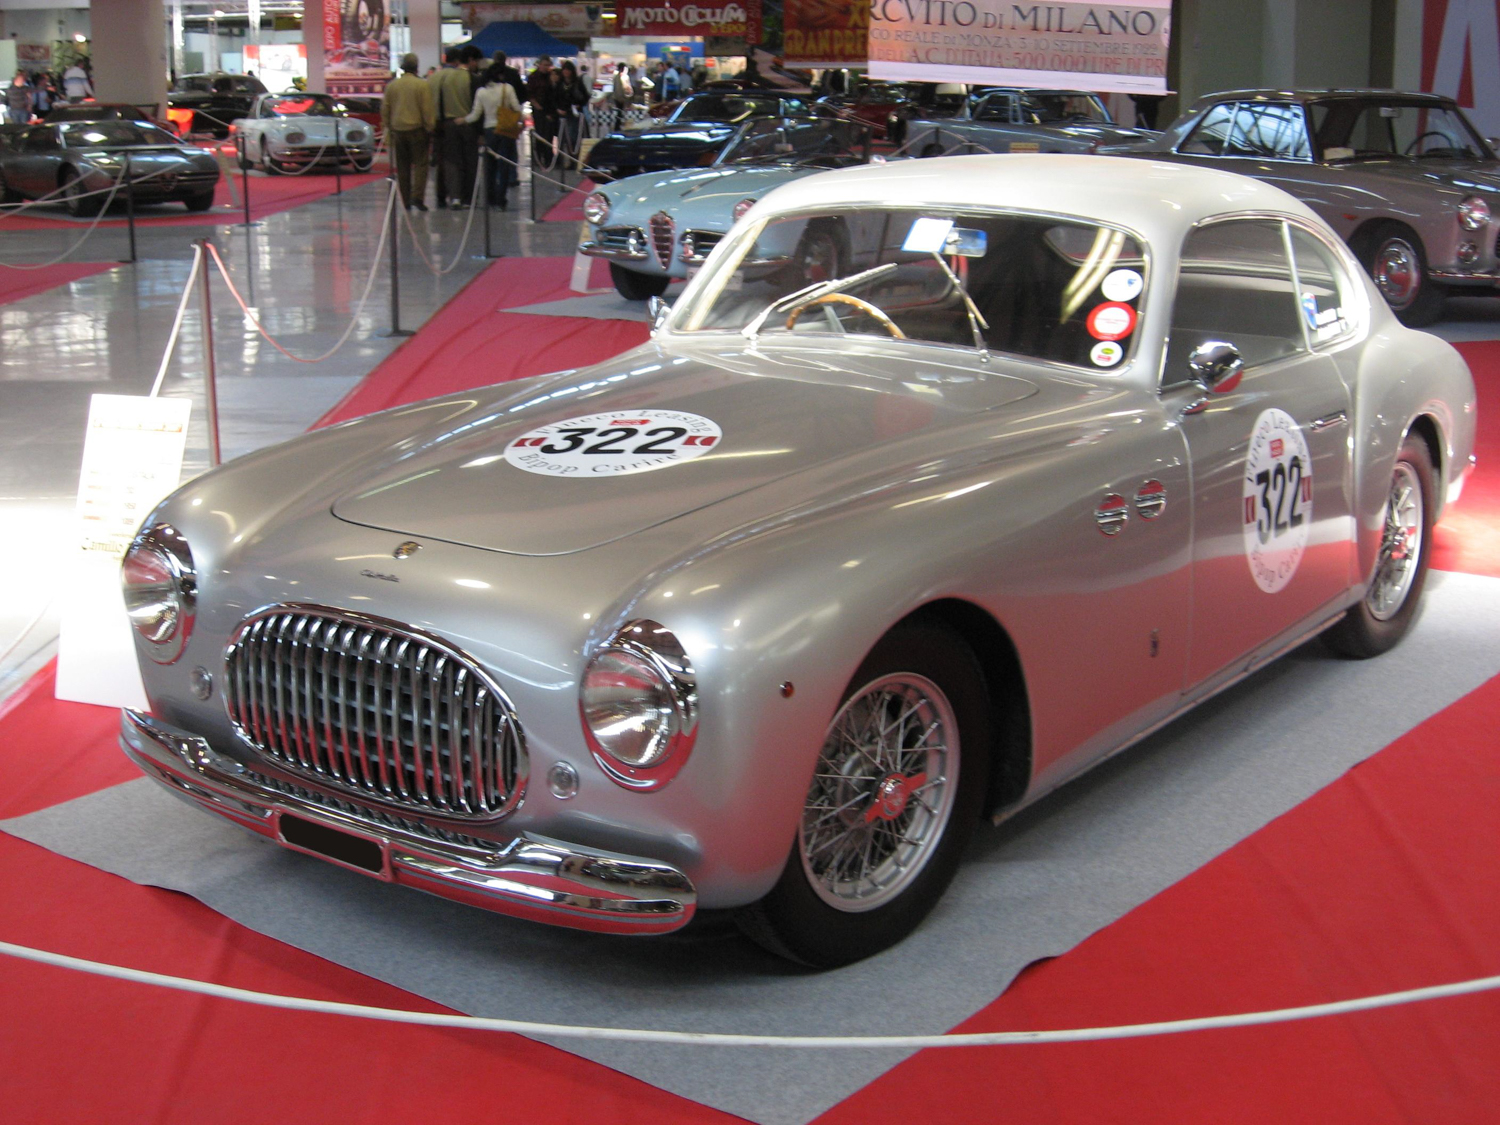 In 1946, Farina designed the Cisitalia 202 Coupe for Piero Dusio. 